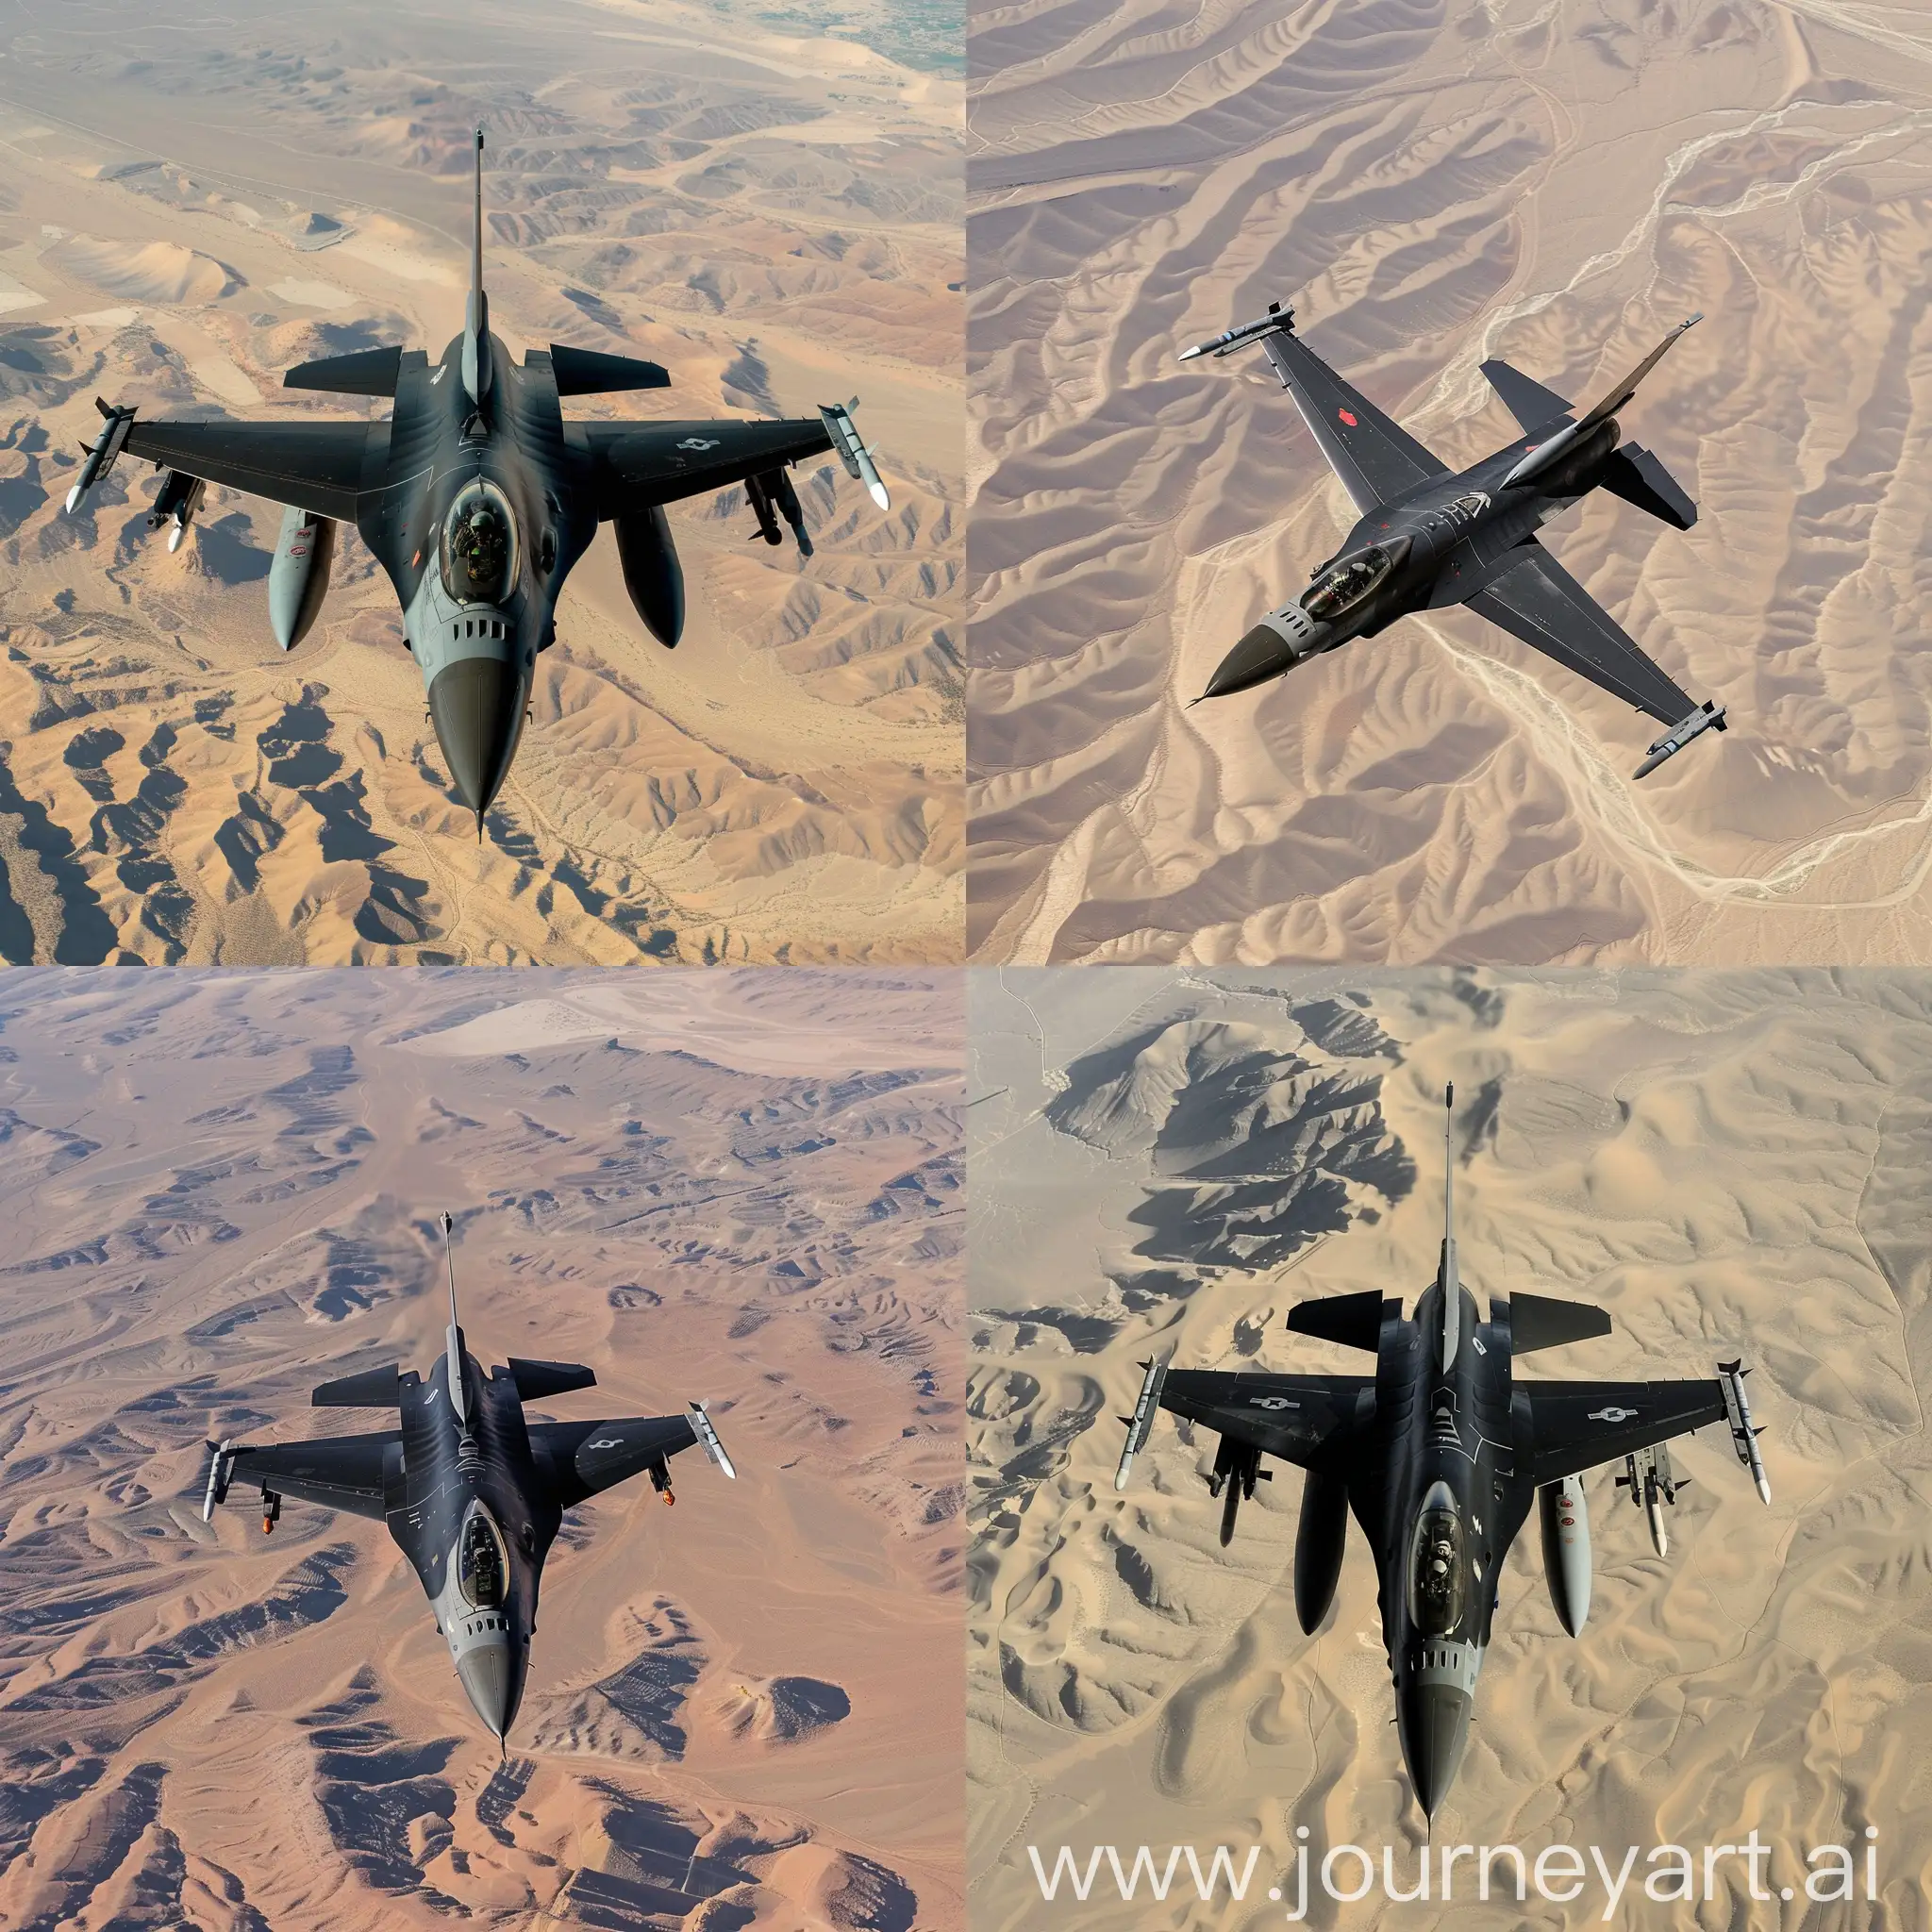 Black-F16-Jet-Flying-Over-Desert-Landscape